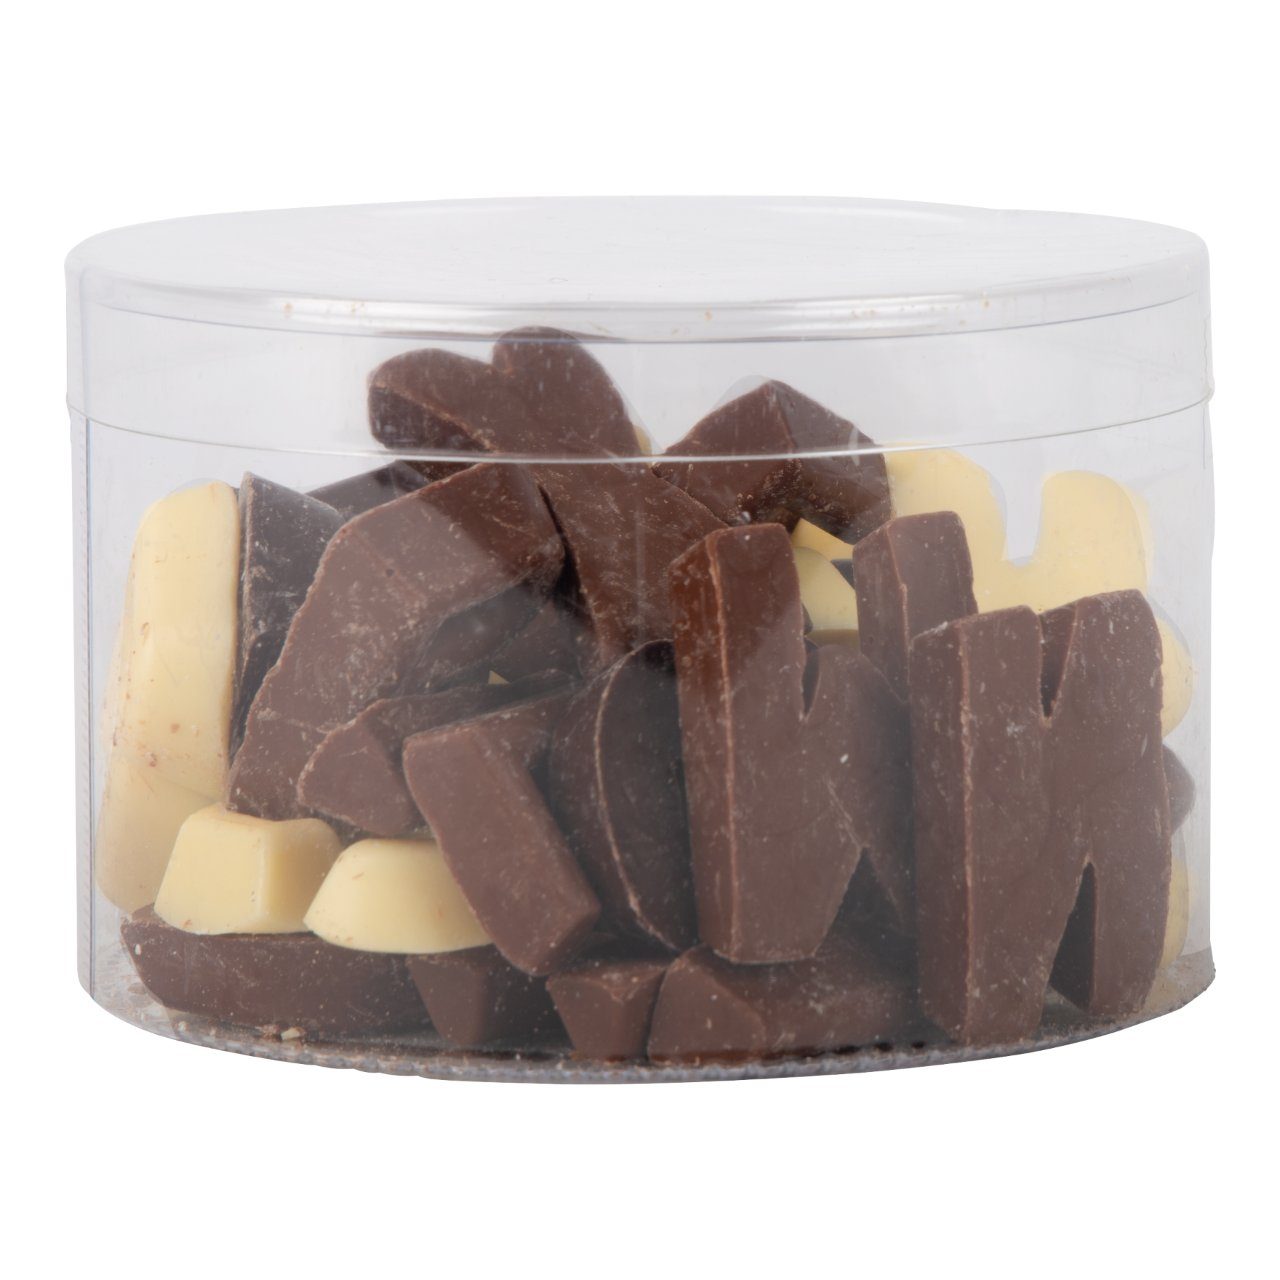 Bonbiance Chocolade Lettertjes Mix (250 Gram) - van Bonbiance - Nu voor maar €6.95 bij Mijn Snoepgoed